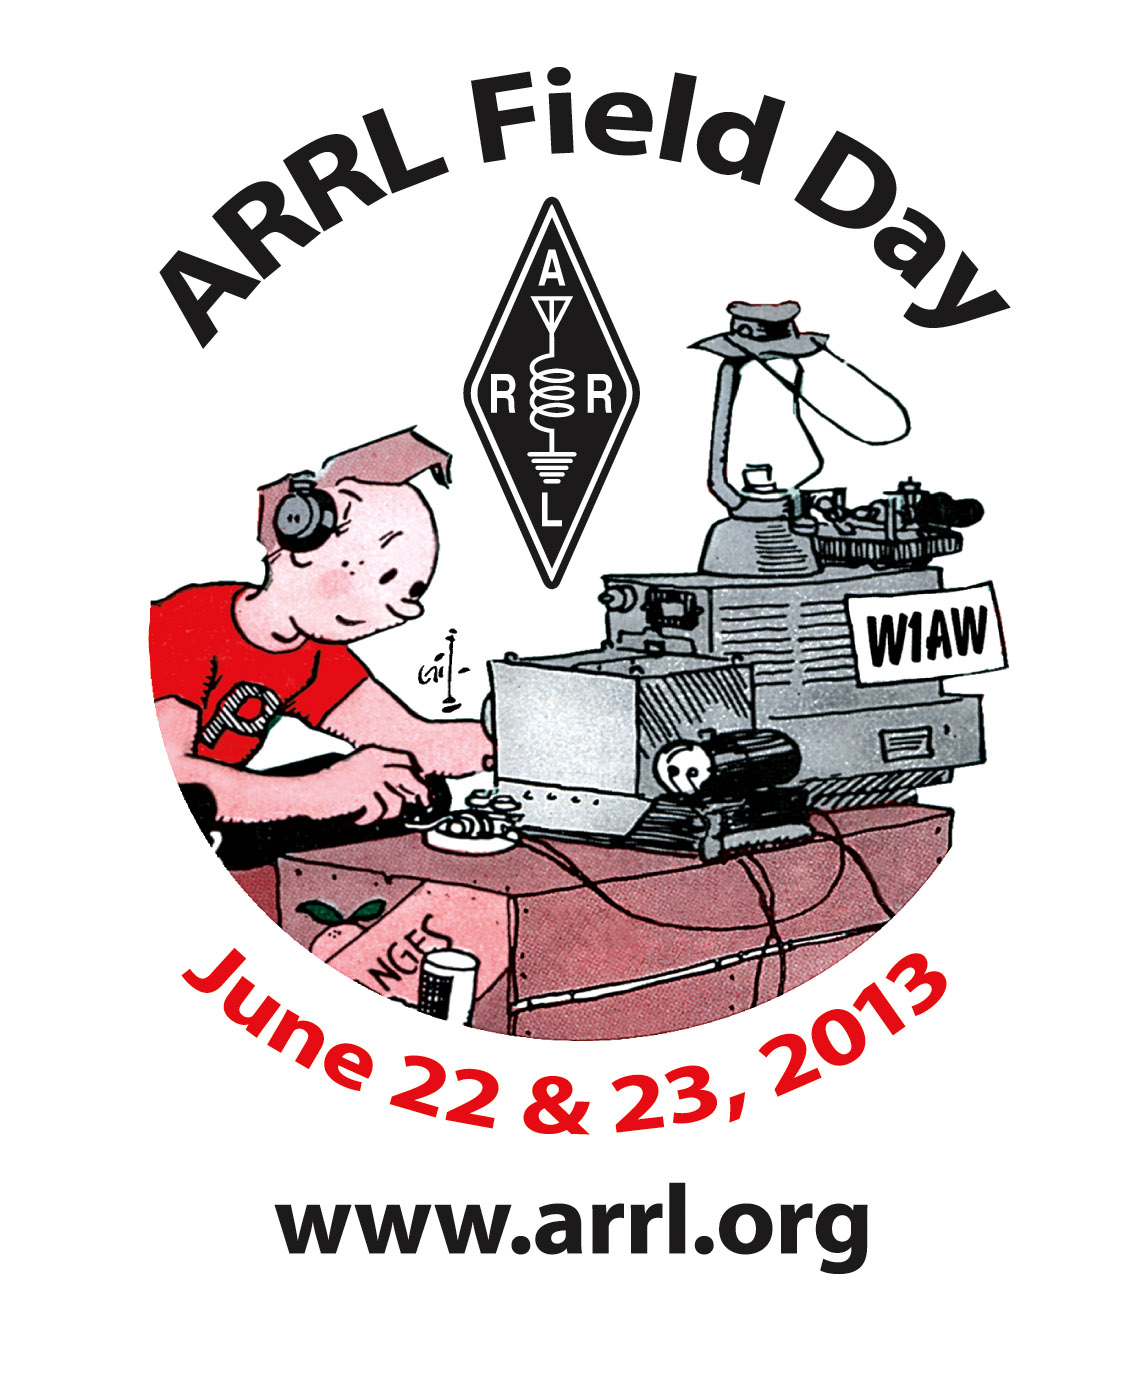 ARRL Field Day